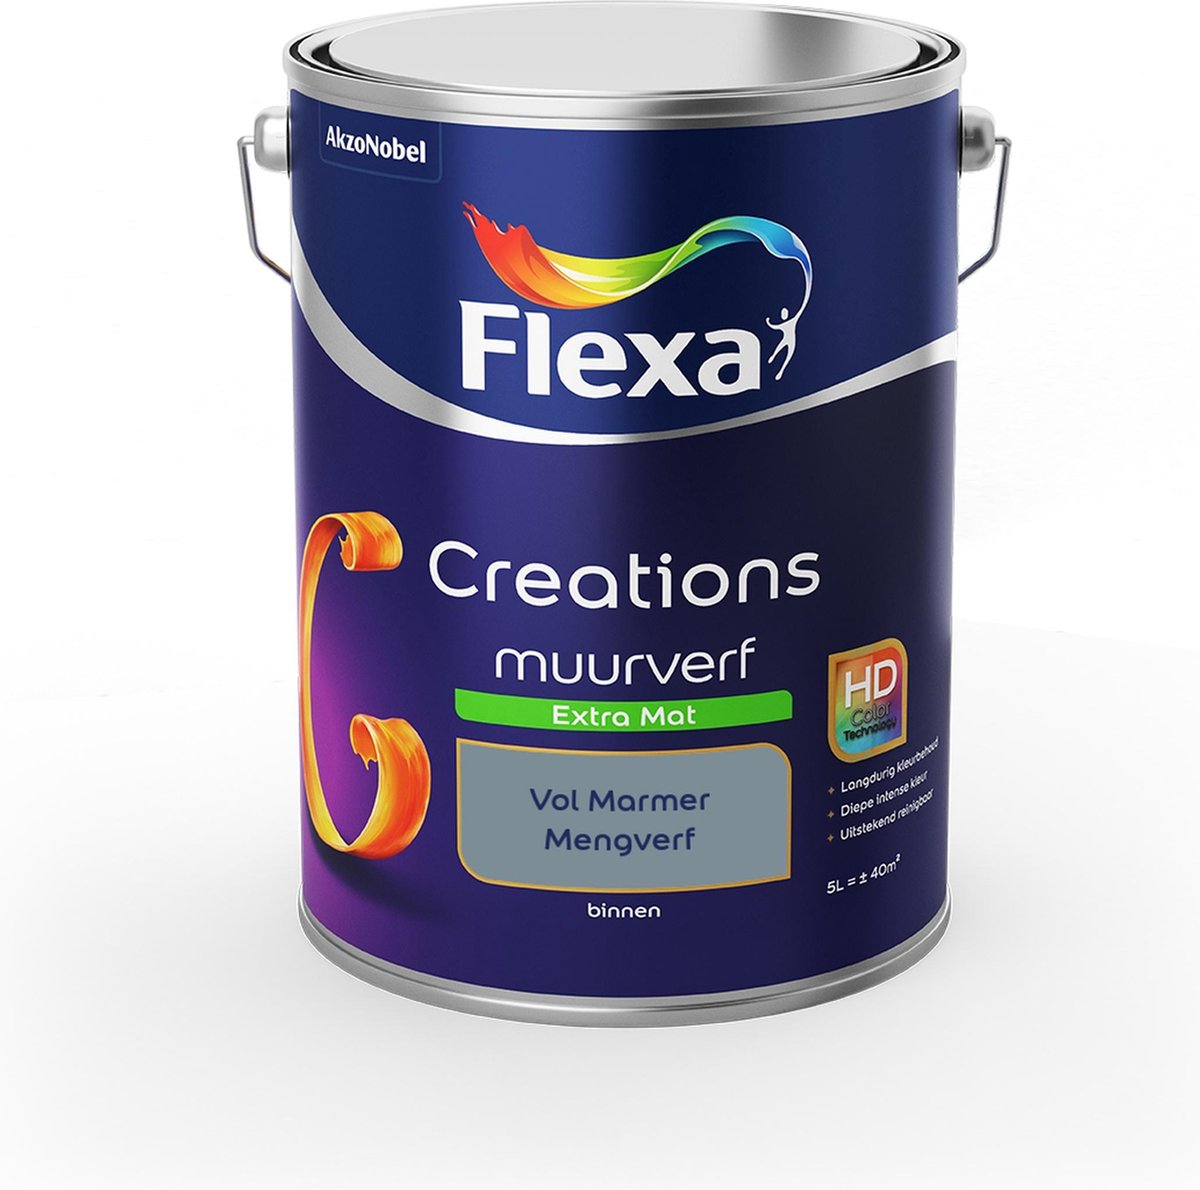 Flexa Creations Muurverf - Extra Mat - Mengkleuren Collectie - Vol Marmer - 5 liter